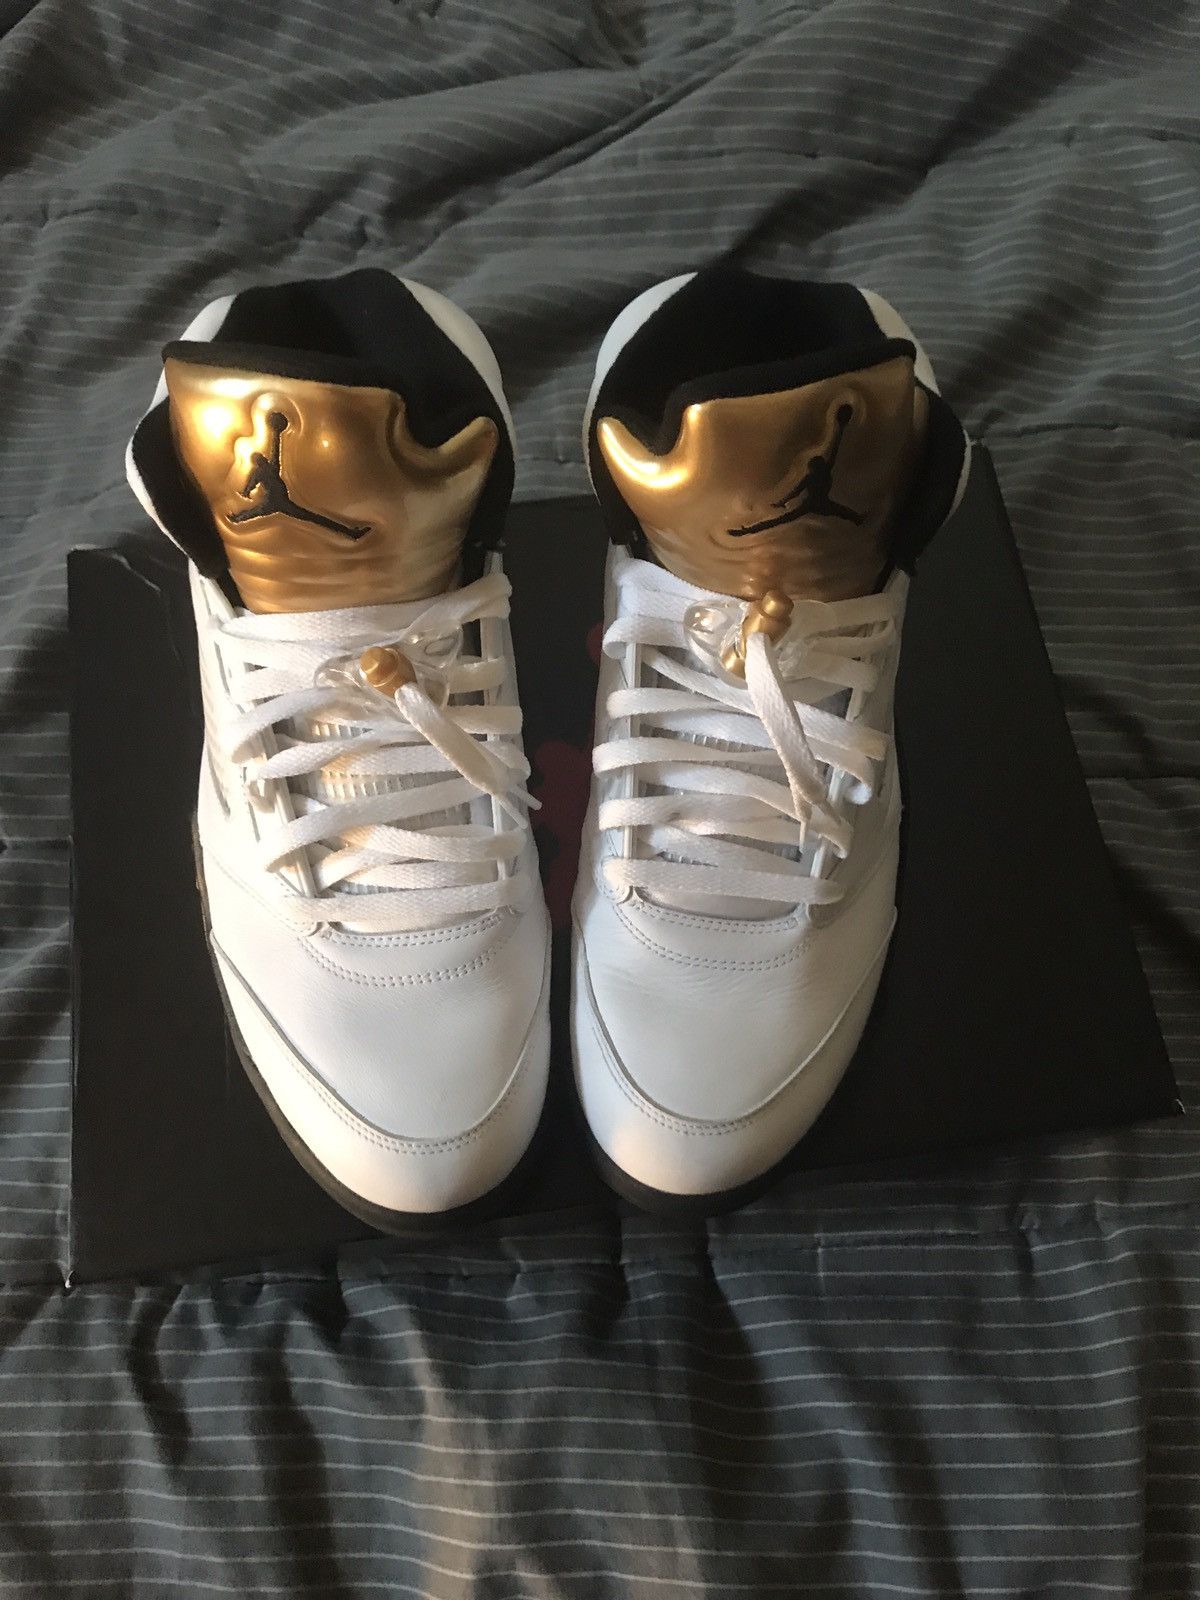 Jordan Brand Jordan White/Metallic Gold 5s Size US 11 / EU 44 - 2 Preview